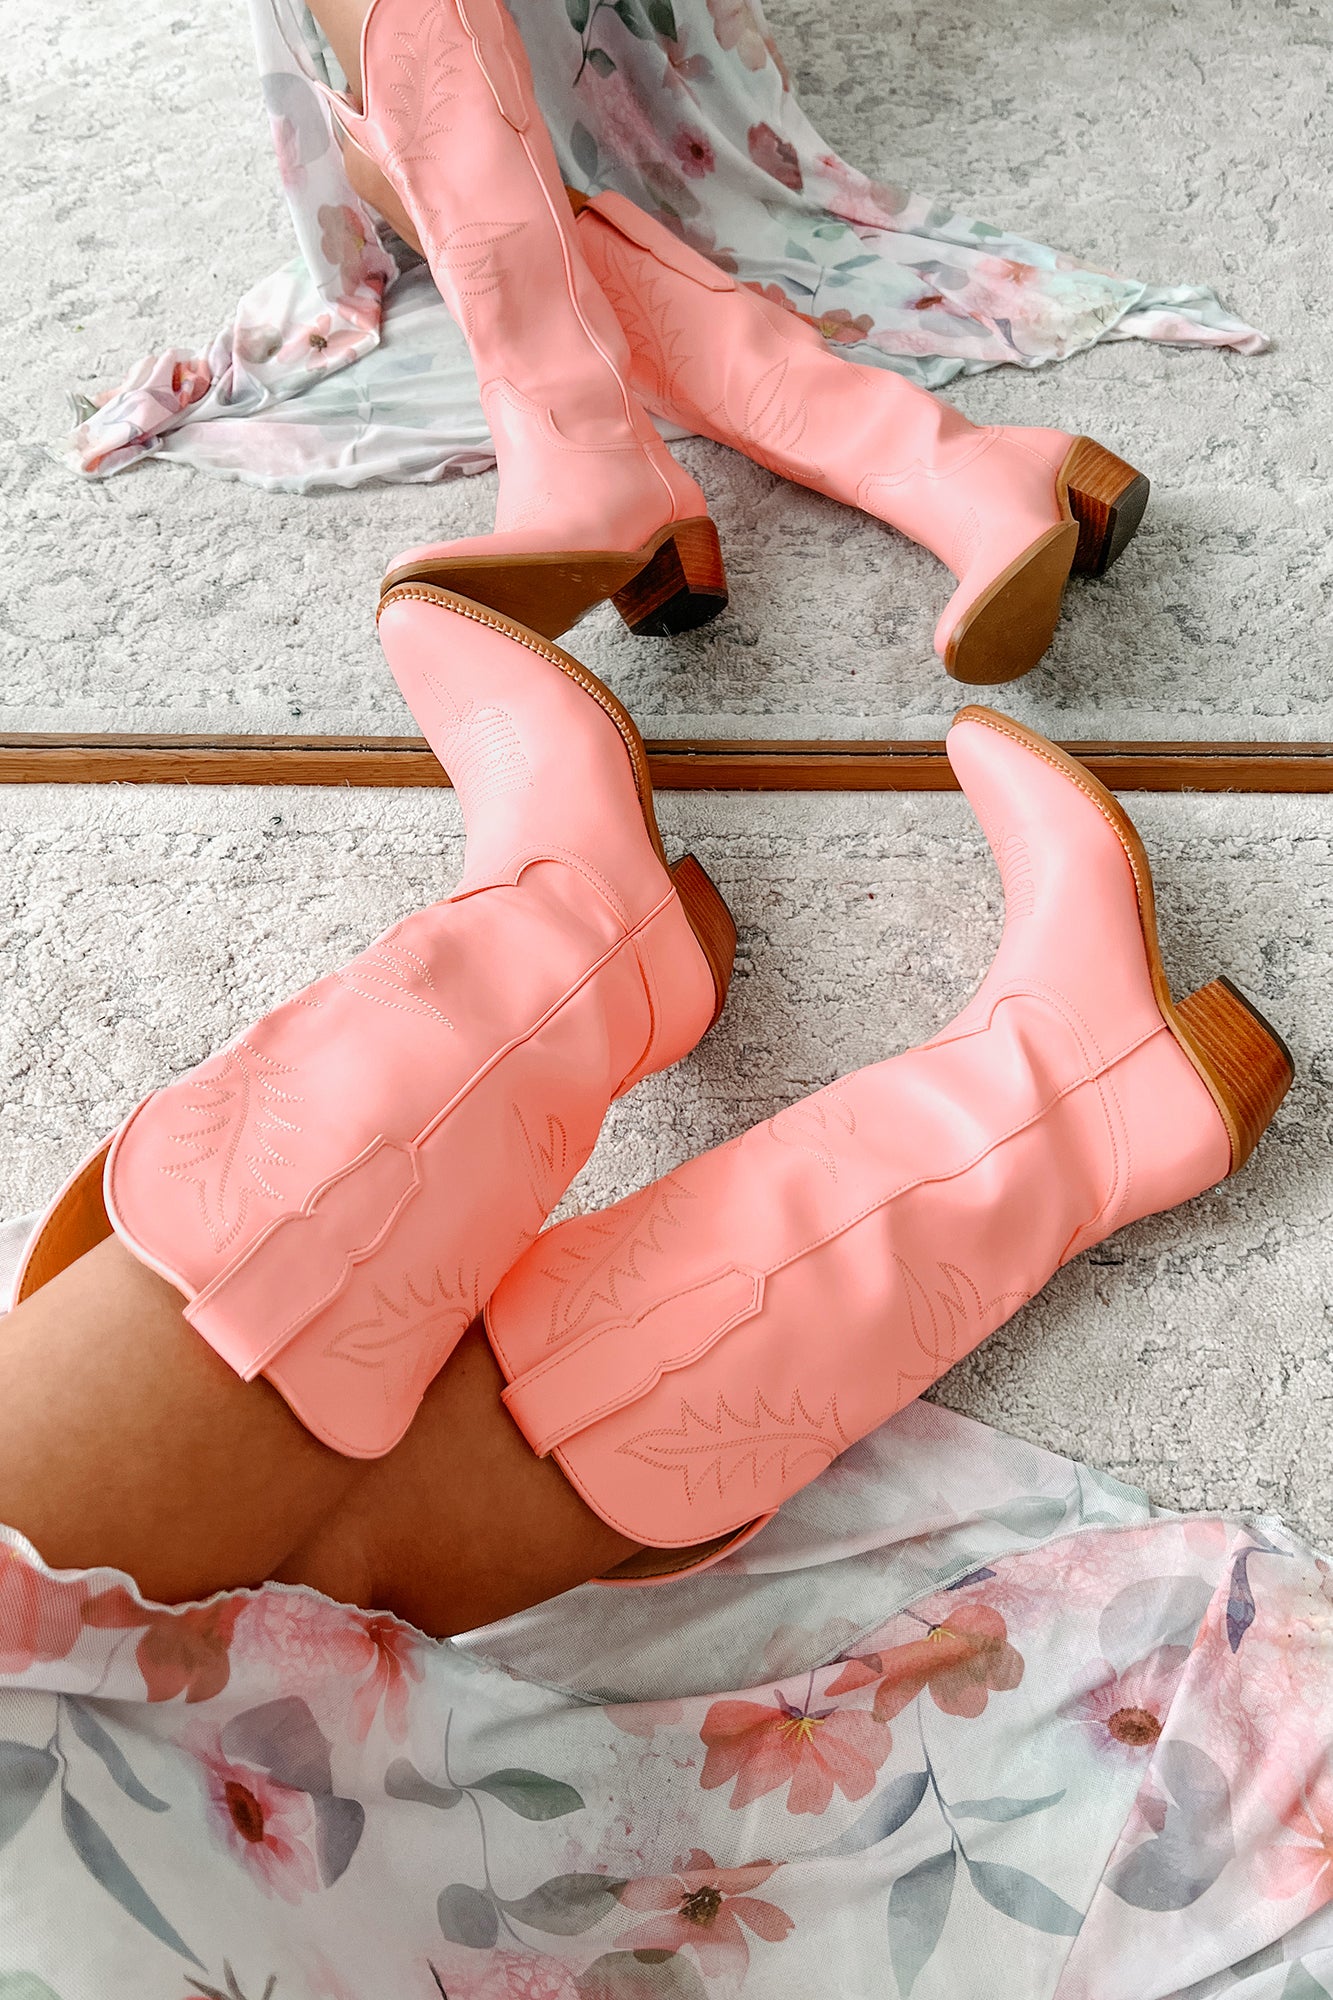 City Slicker Cowboy Boots (Pink) - NanaMacs